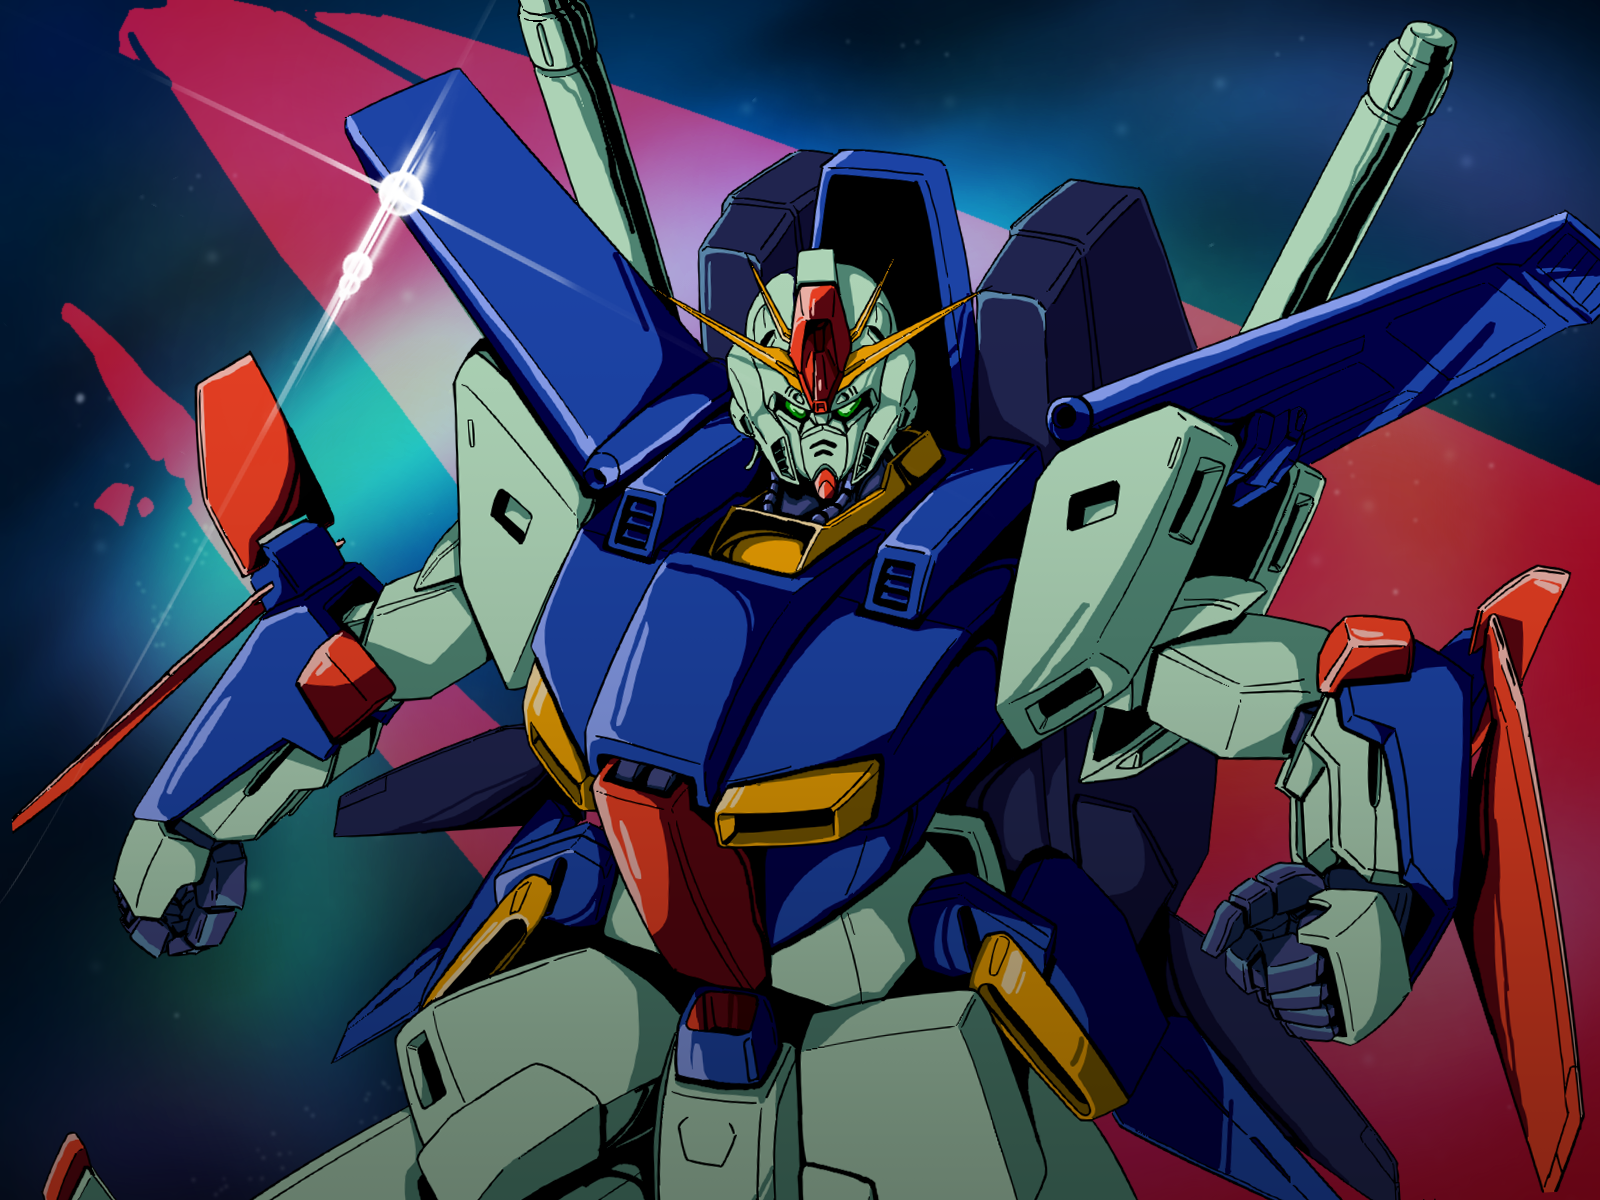 Anime 1600x1200 anime mechs Super Robot Taisen Mobile Suit Gundam ZZ ZZ Gundam Gundam artwork digital art fan art